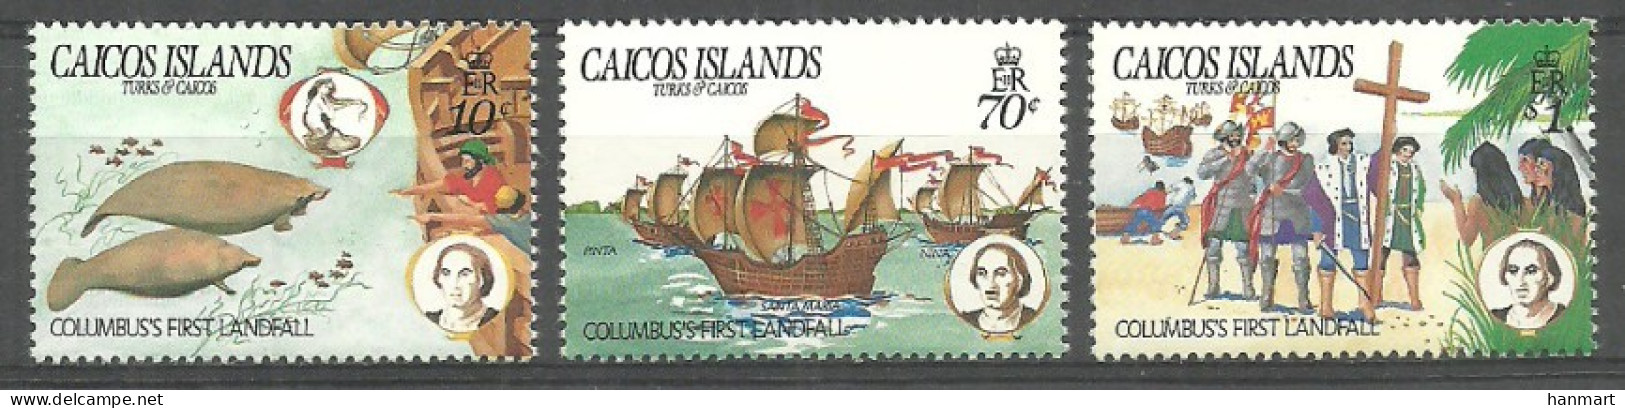 Caicos Islands 1984 Mi 52-54 MNH  (ZS7 CIC52-54) - Christopher Columbus